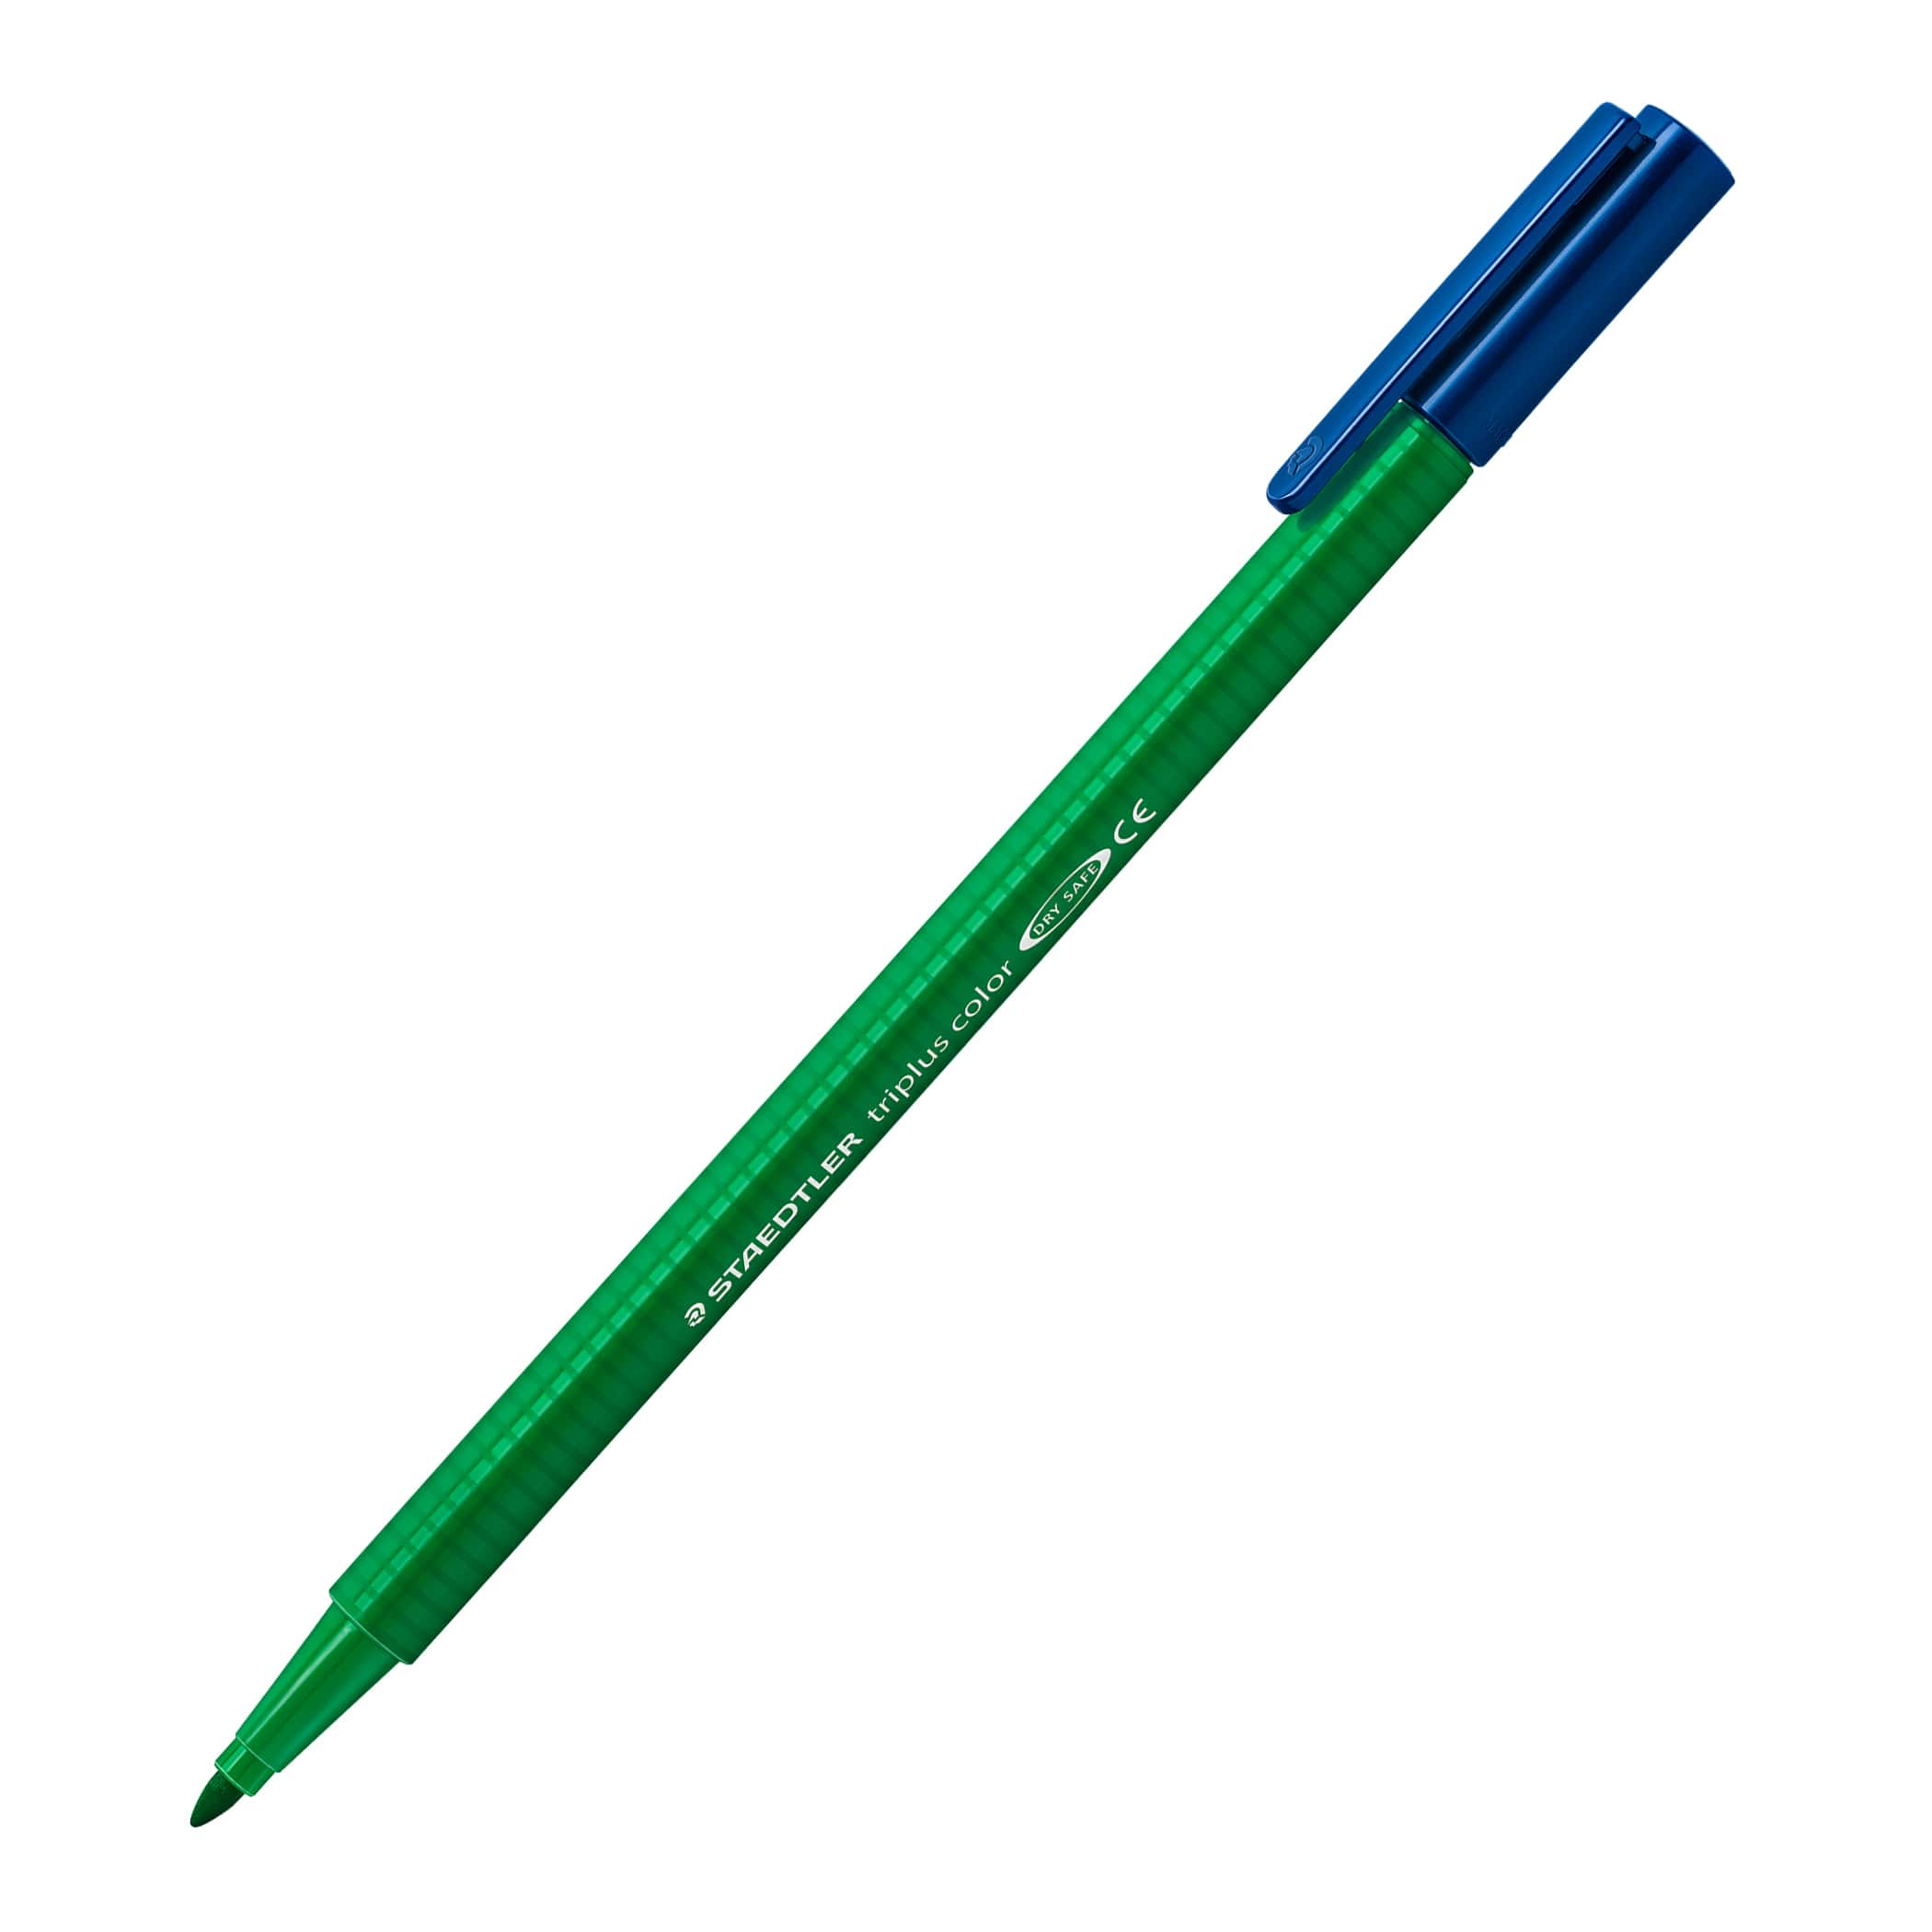 Ensemble de stylos feutres à pointe large Triplus de Staedtler